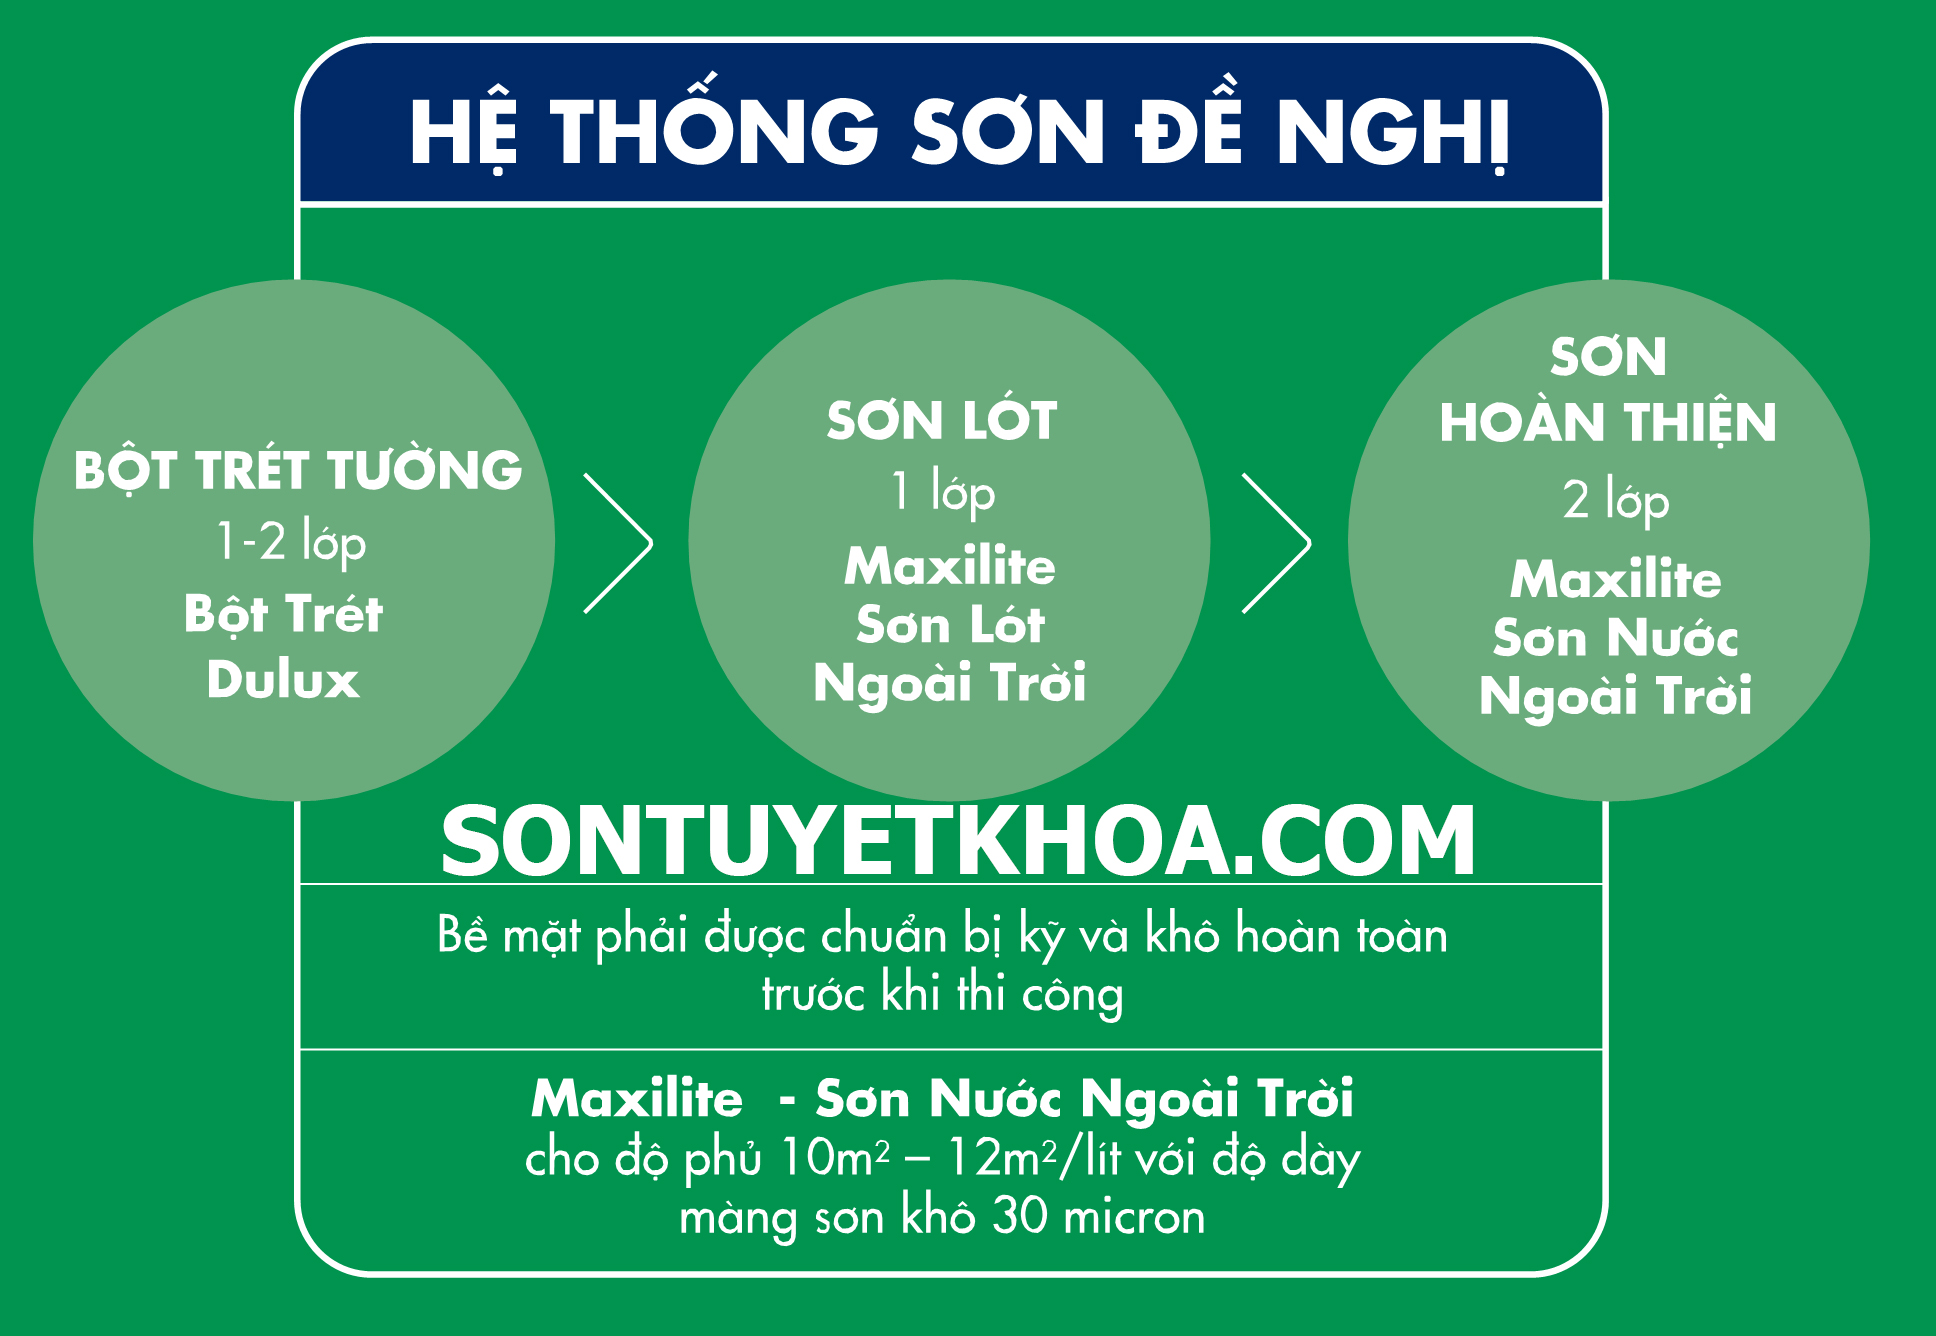 he-thong-son-dung-cung-maxilite-son-nuoc-ngoai-troi